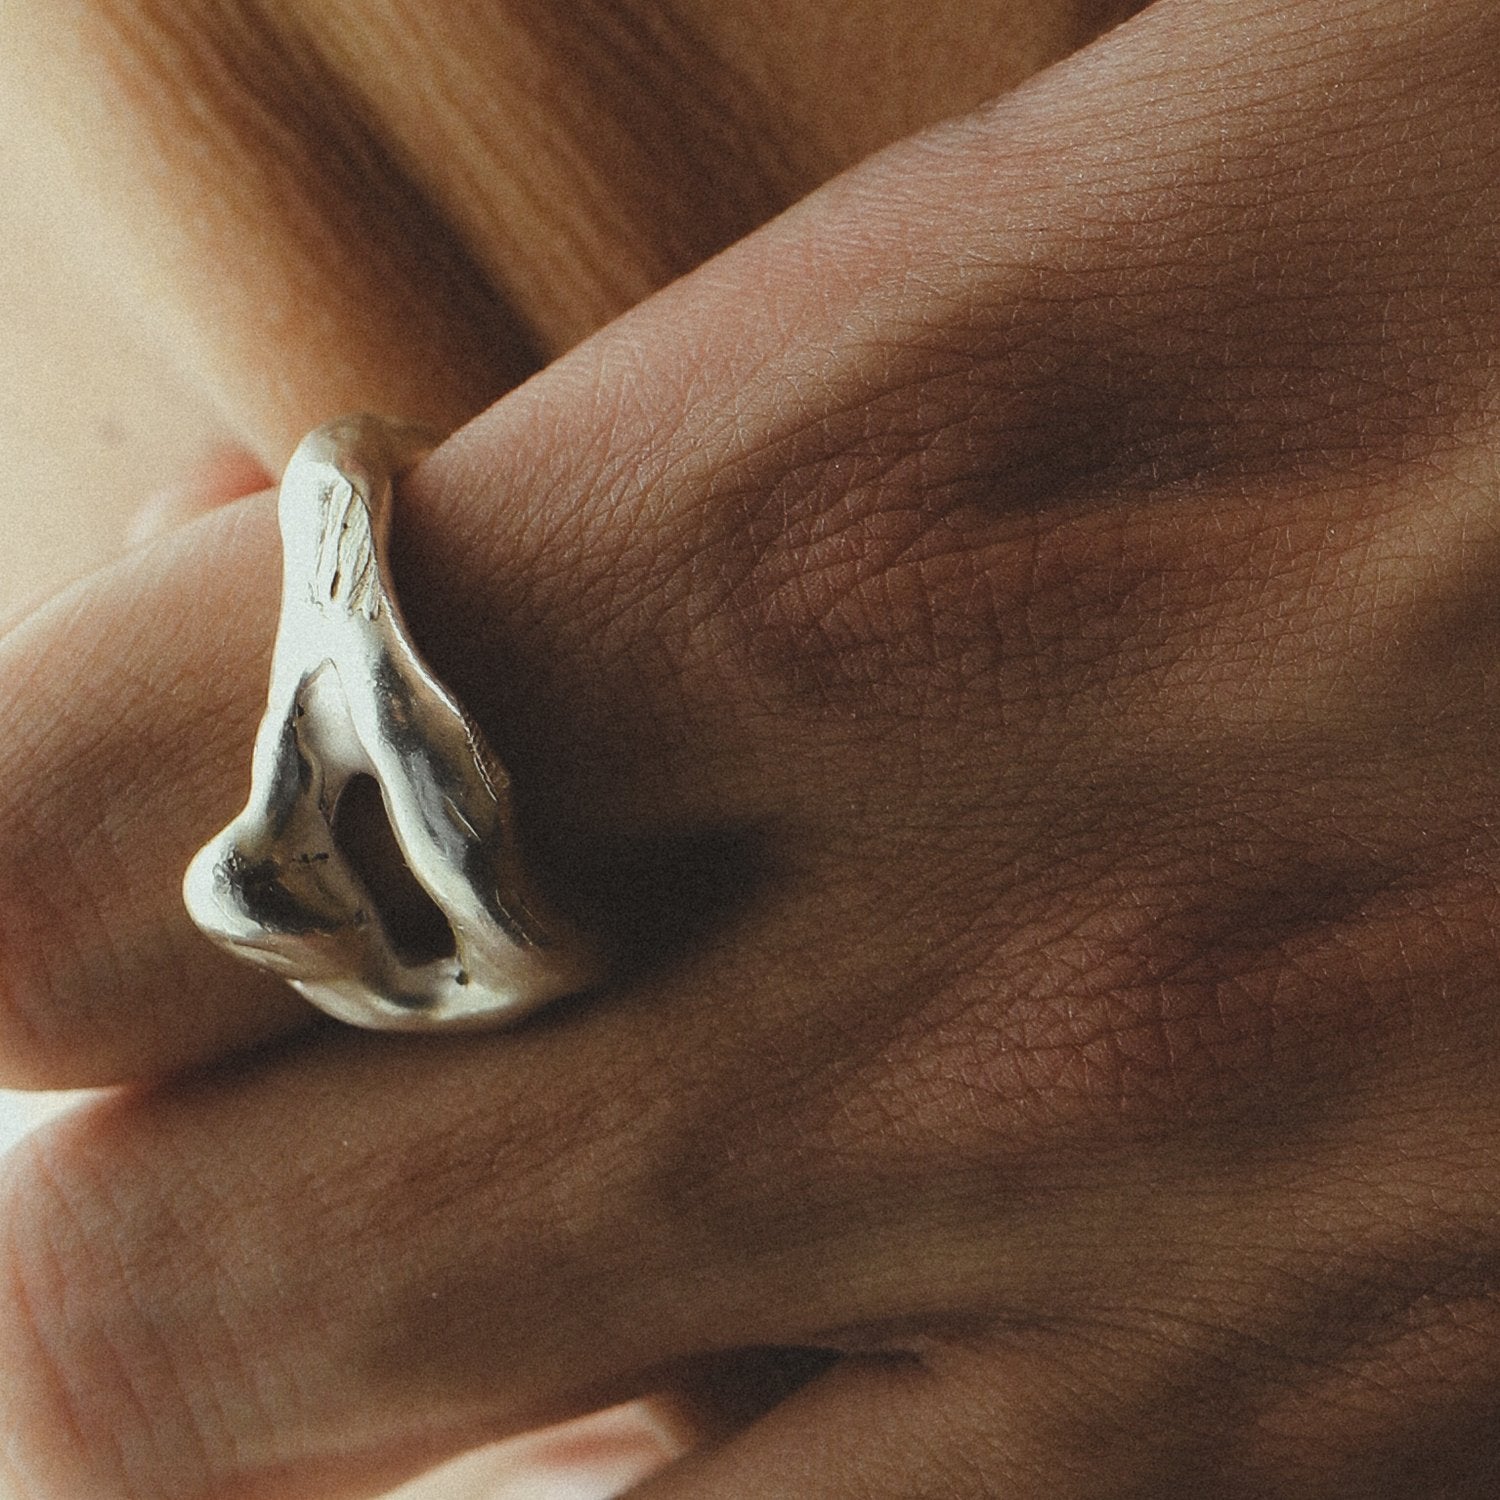 Auryn 05 silver ring by Studio Aseo